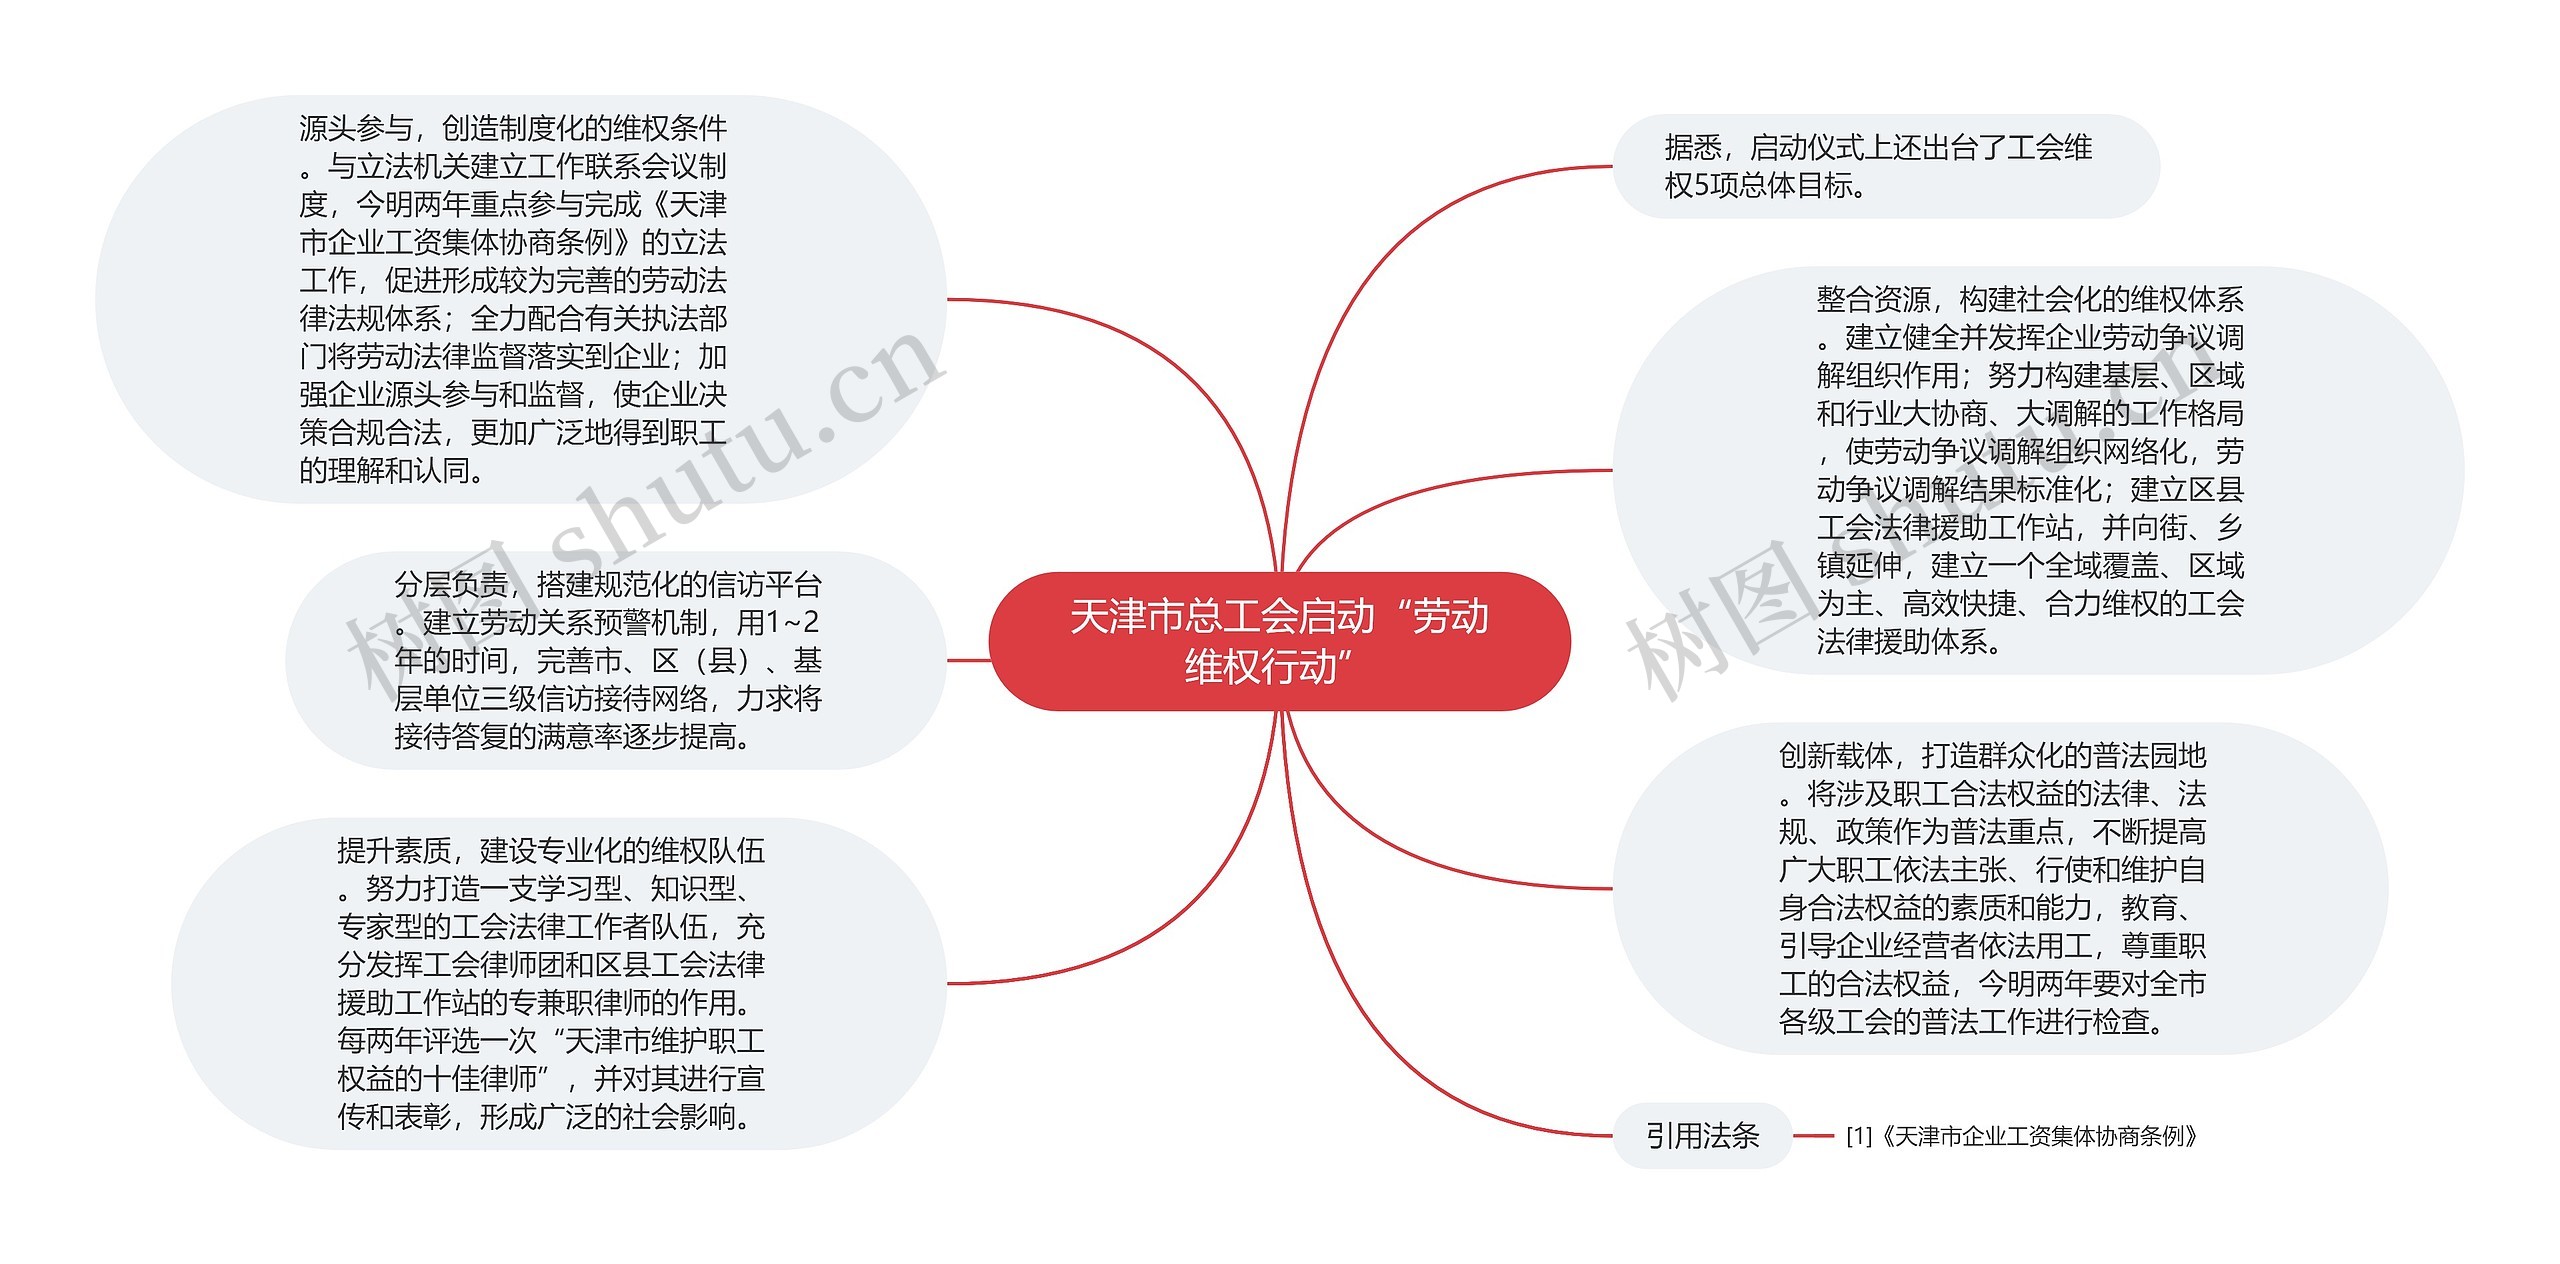 天津市总工会启动“劳动维权行动”